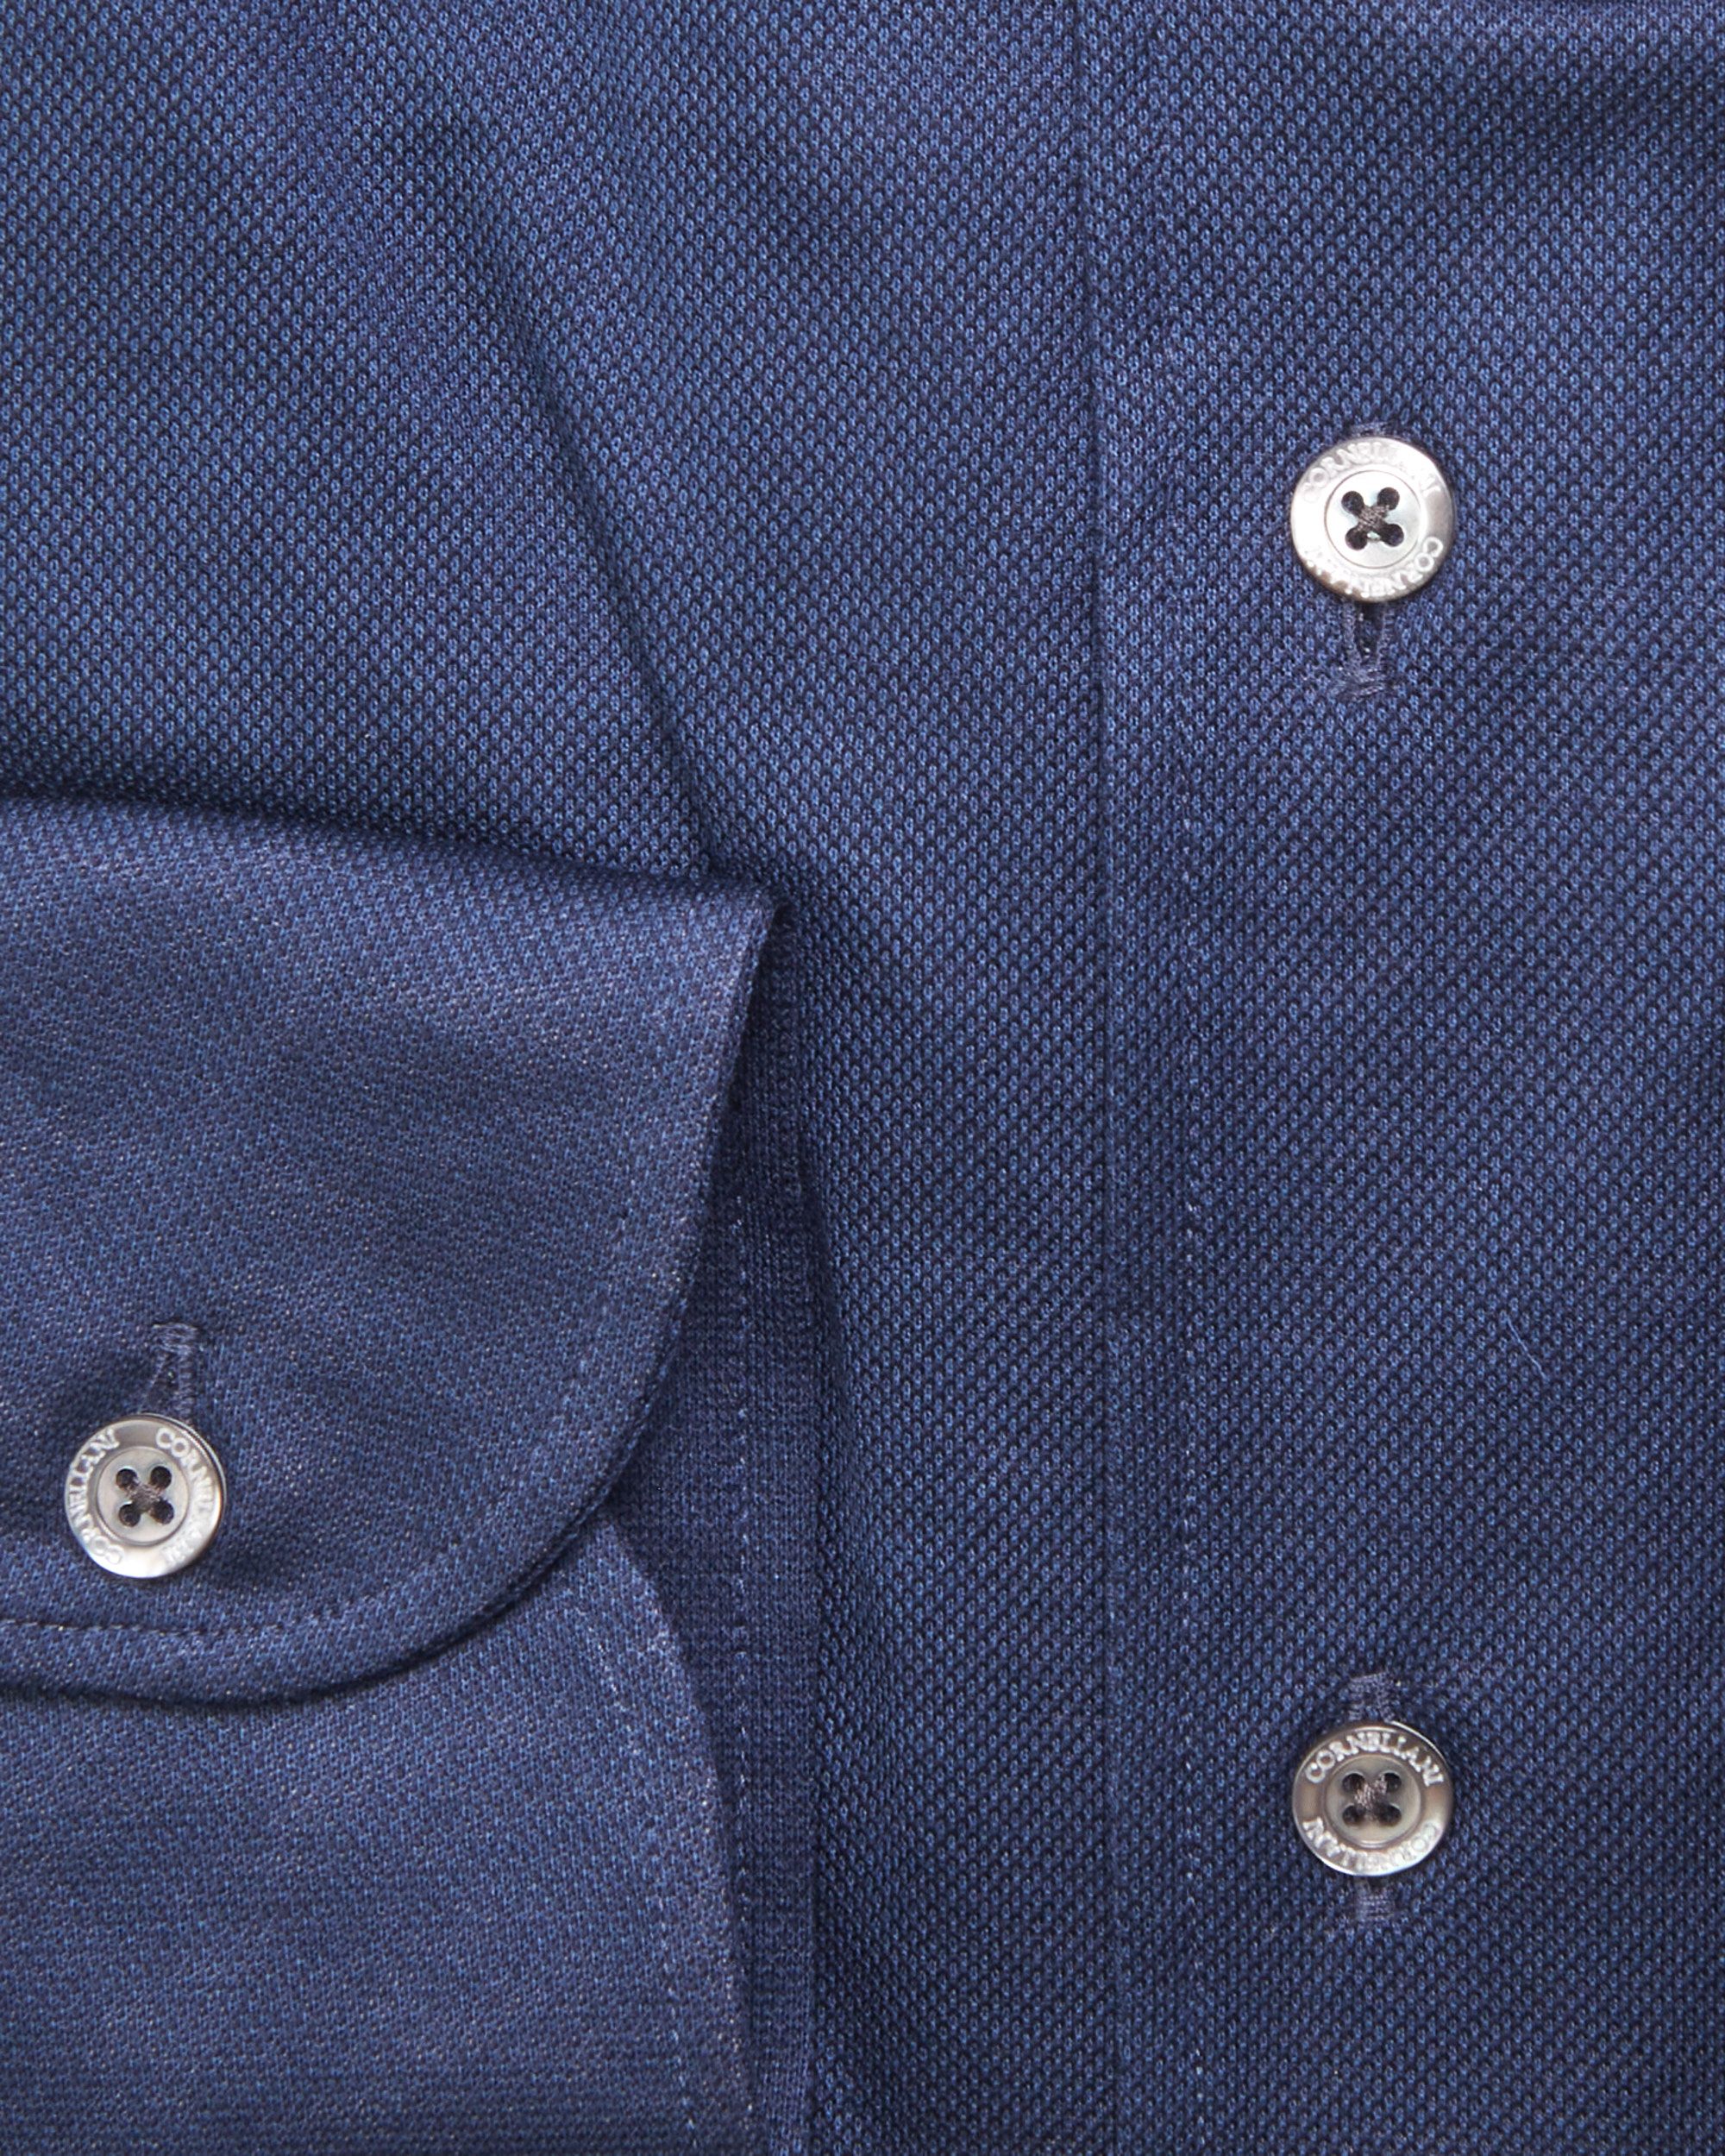 Corneliani Overhemd LM Donker blauw 078619-001-39